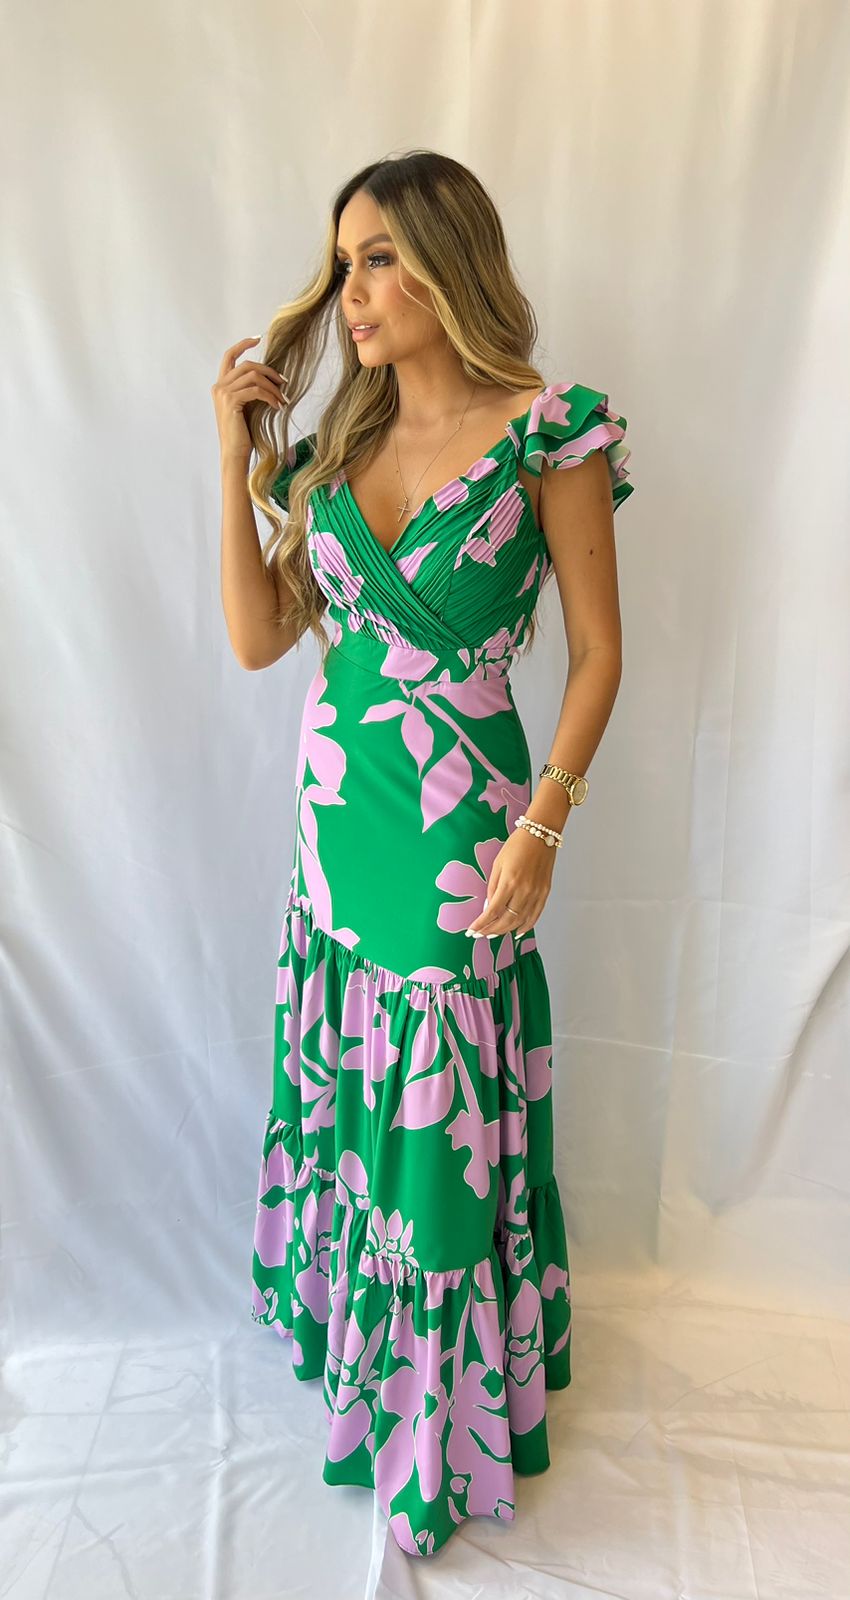 Mujer vistiendo un elegante vestido largo verde estampado floral de KIKE RODRIGUEZ, ideal para eventos especiales y ocasiones elegantes.